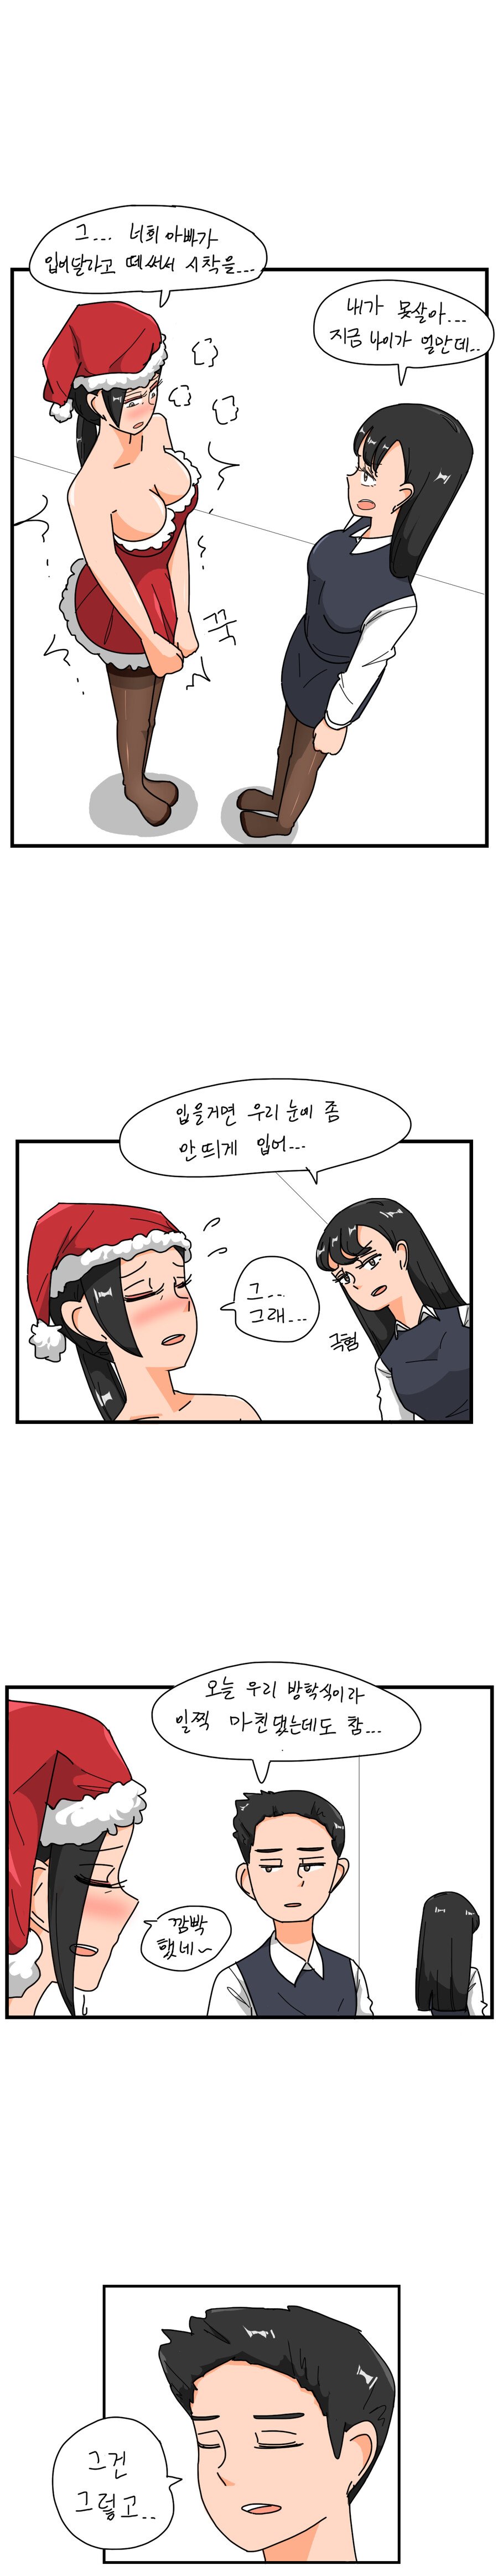 오싹오싹)유부녀가 산타복 입는 .manhwa